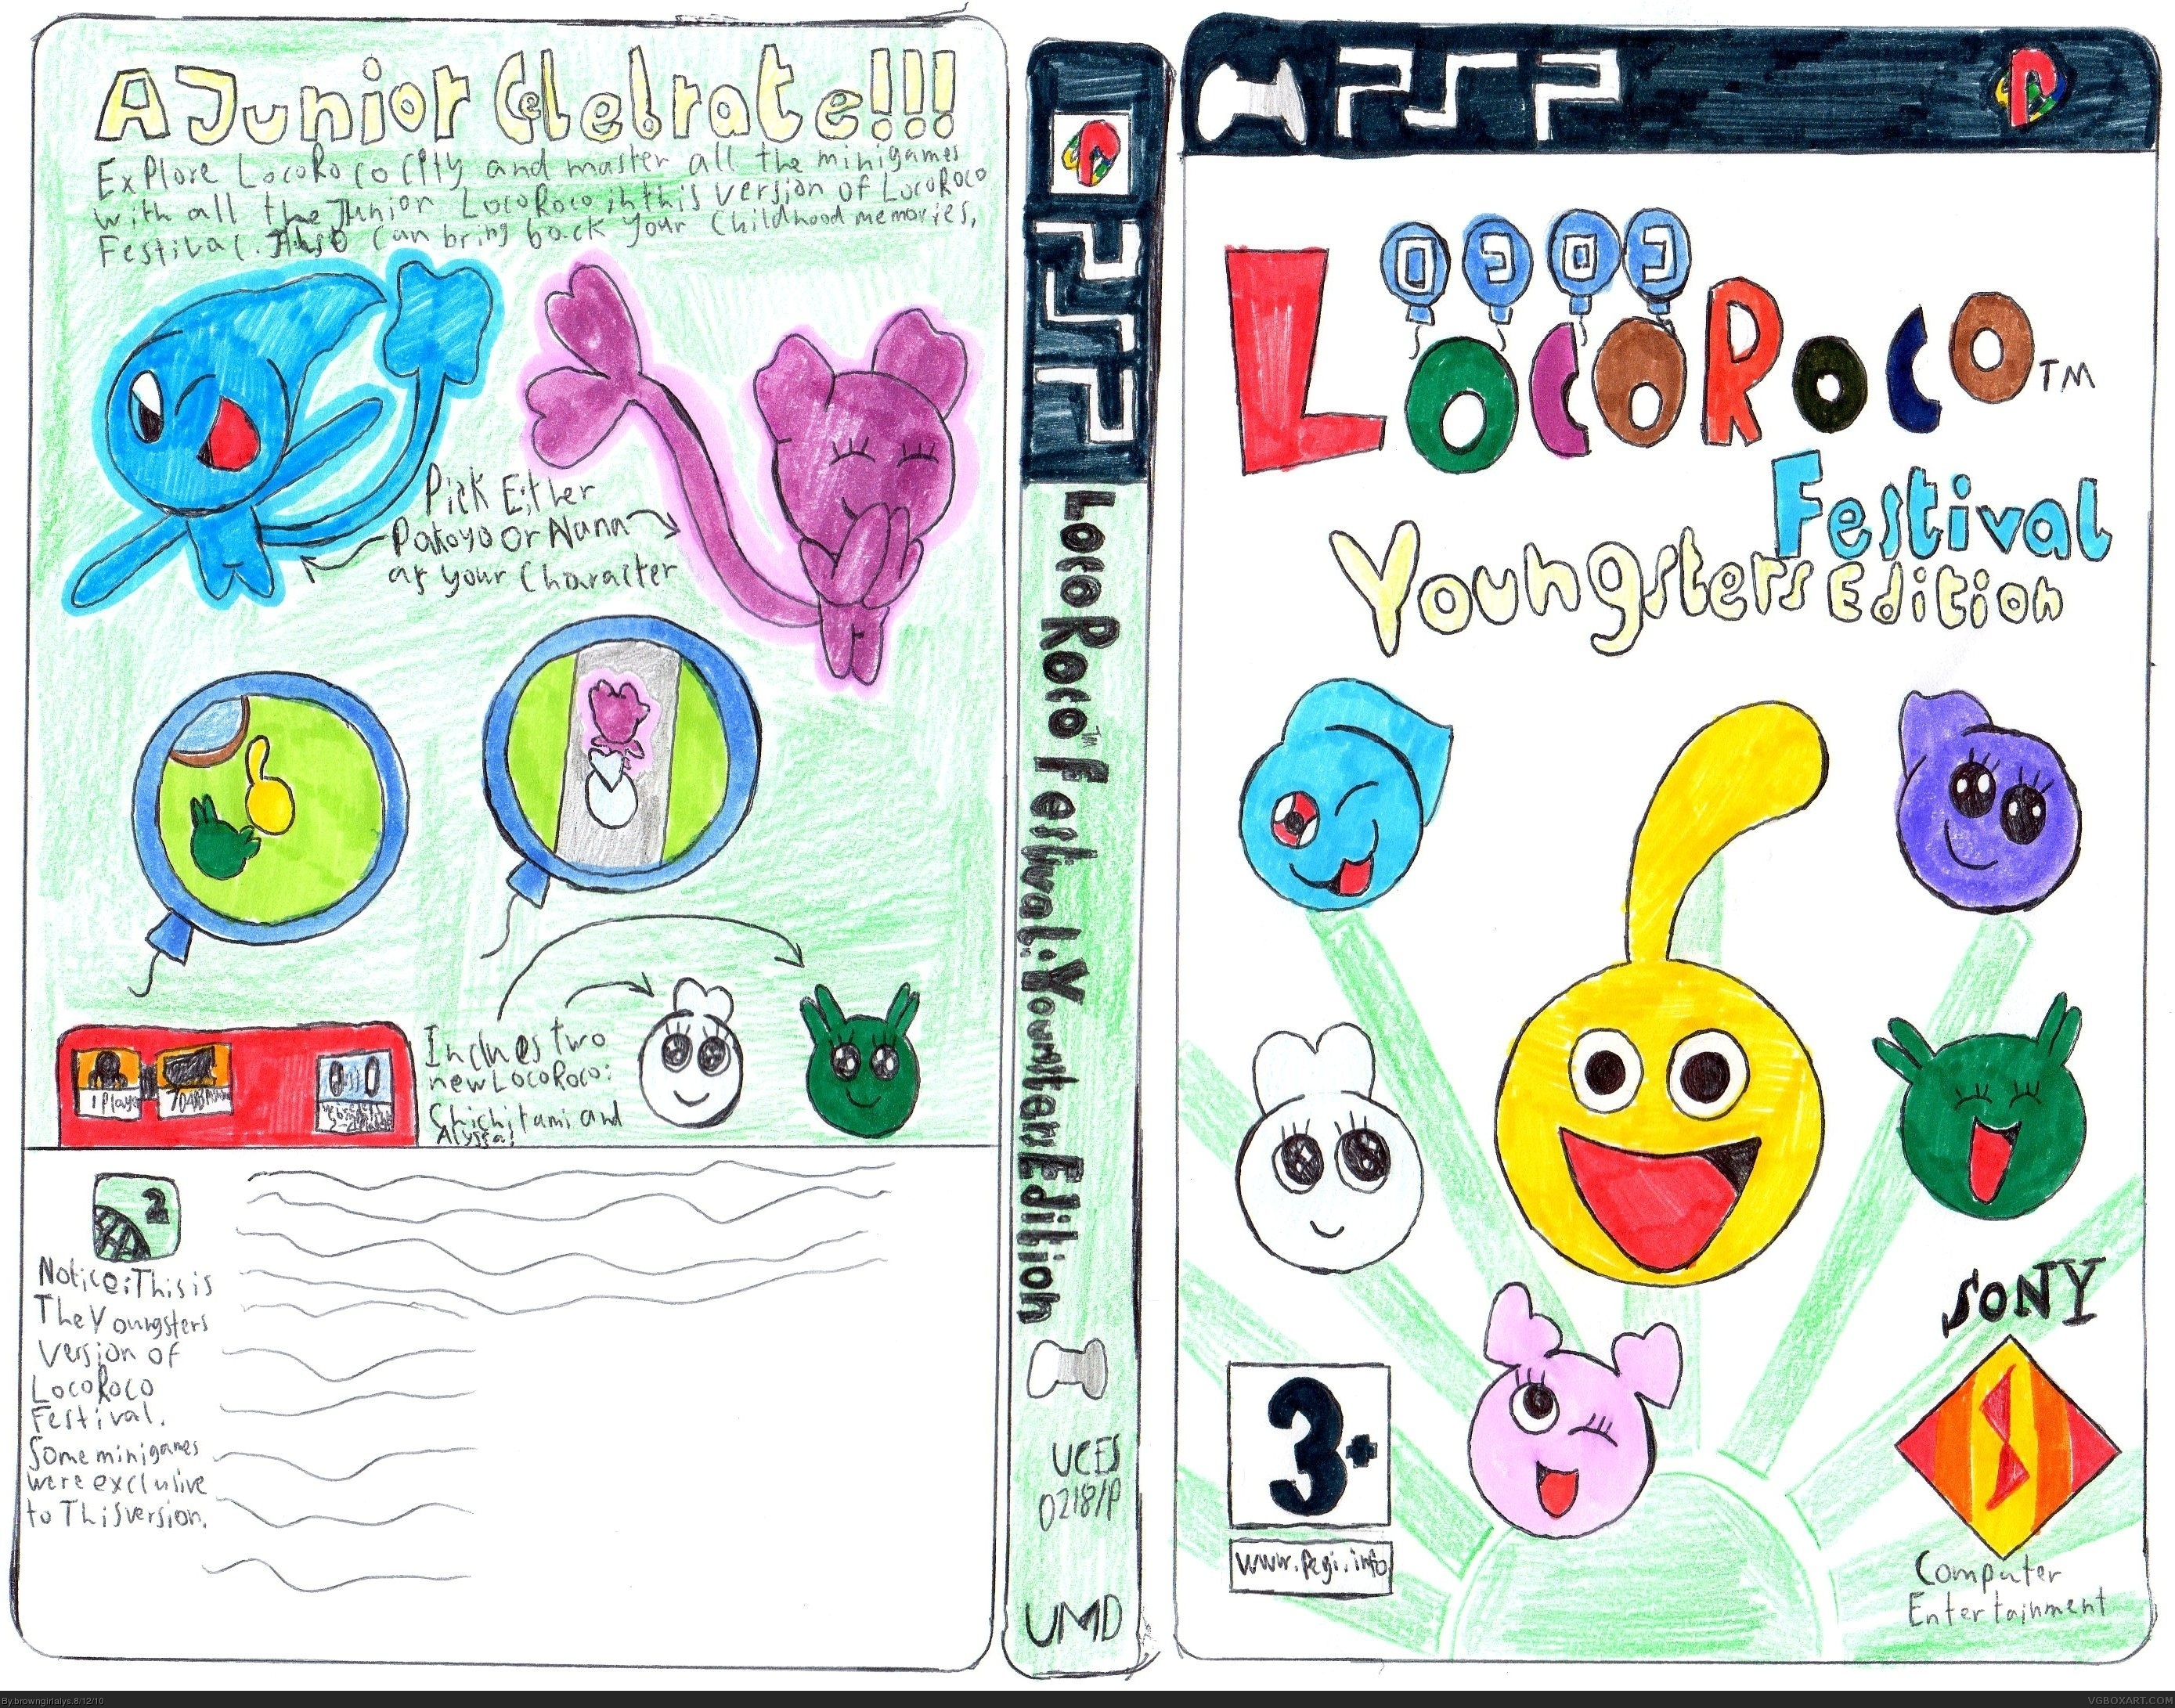 LocoRoco Festival: Younsters Edition box cover